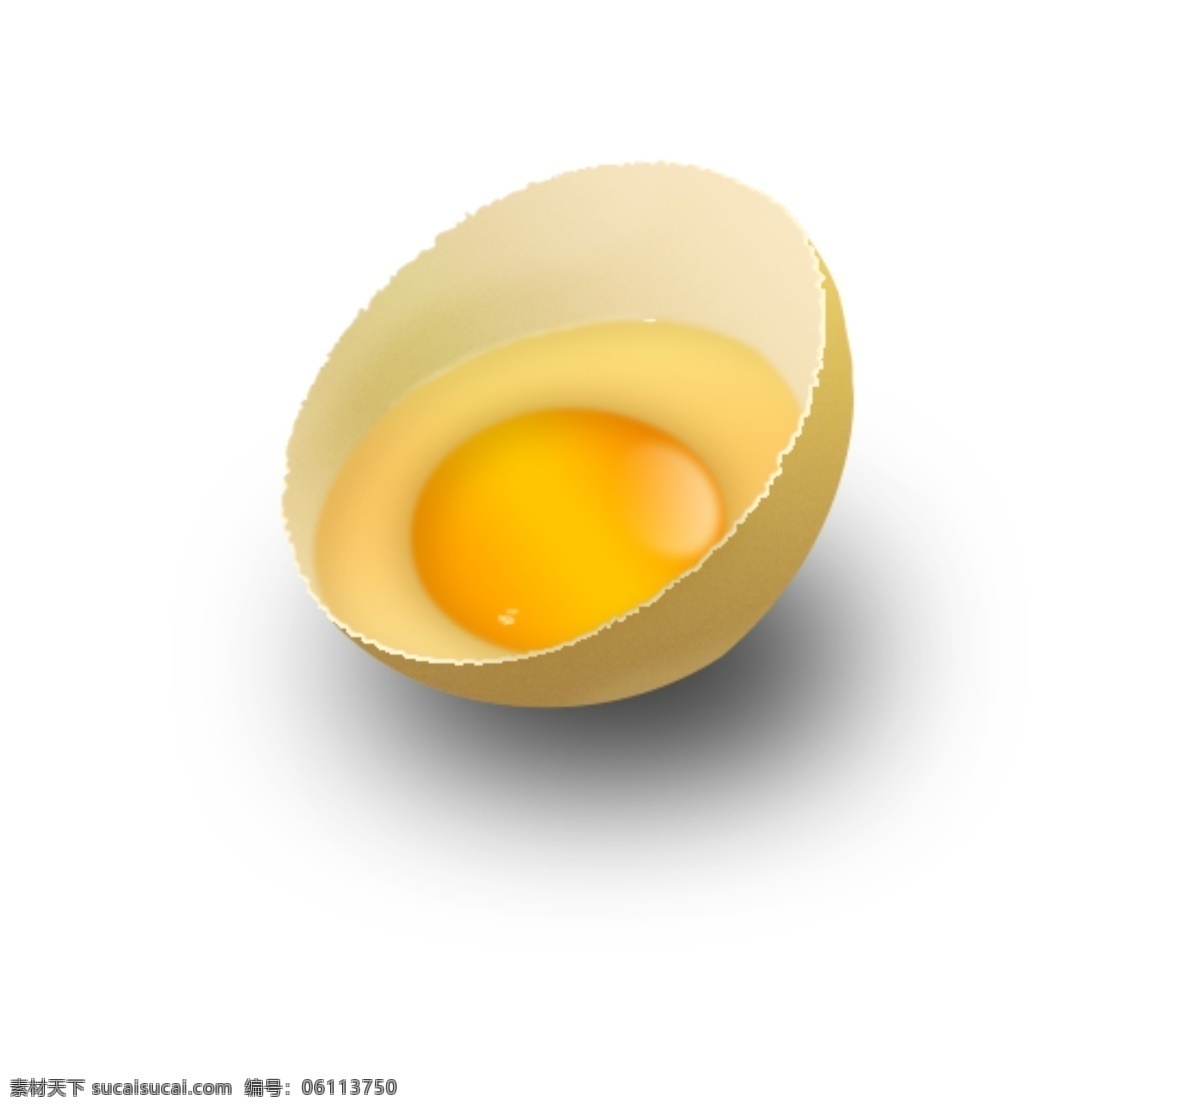 鸡蛋 半个鸡蛋 手绘鸡蛋 生鸡蛋 手绘生鸡蛋 分层